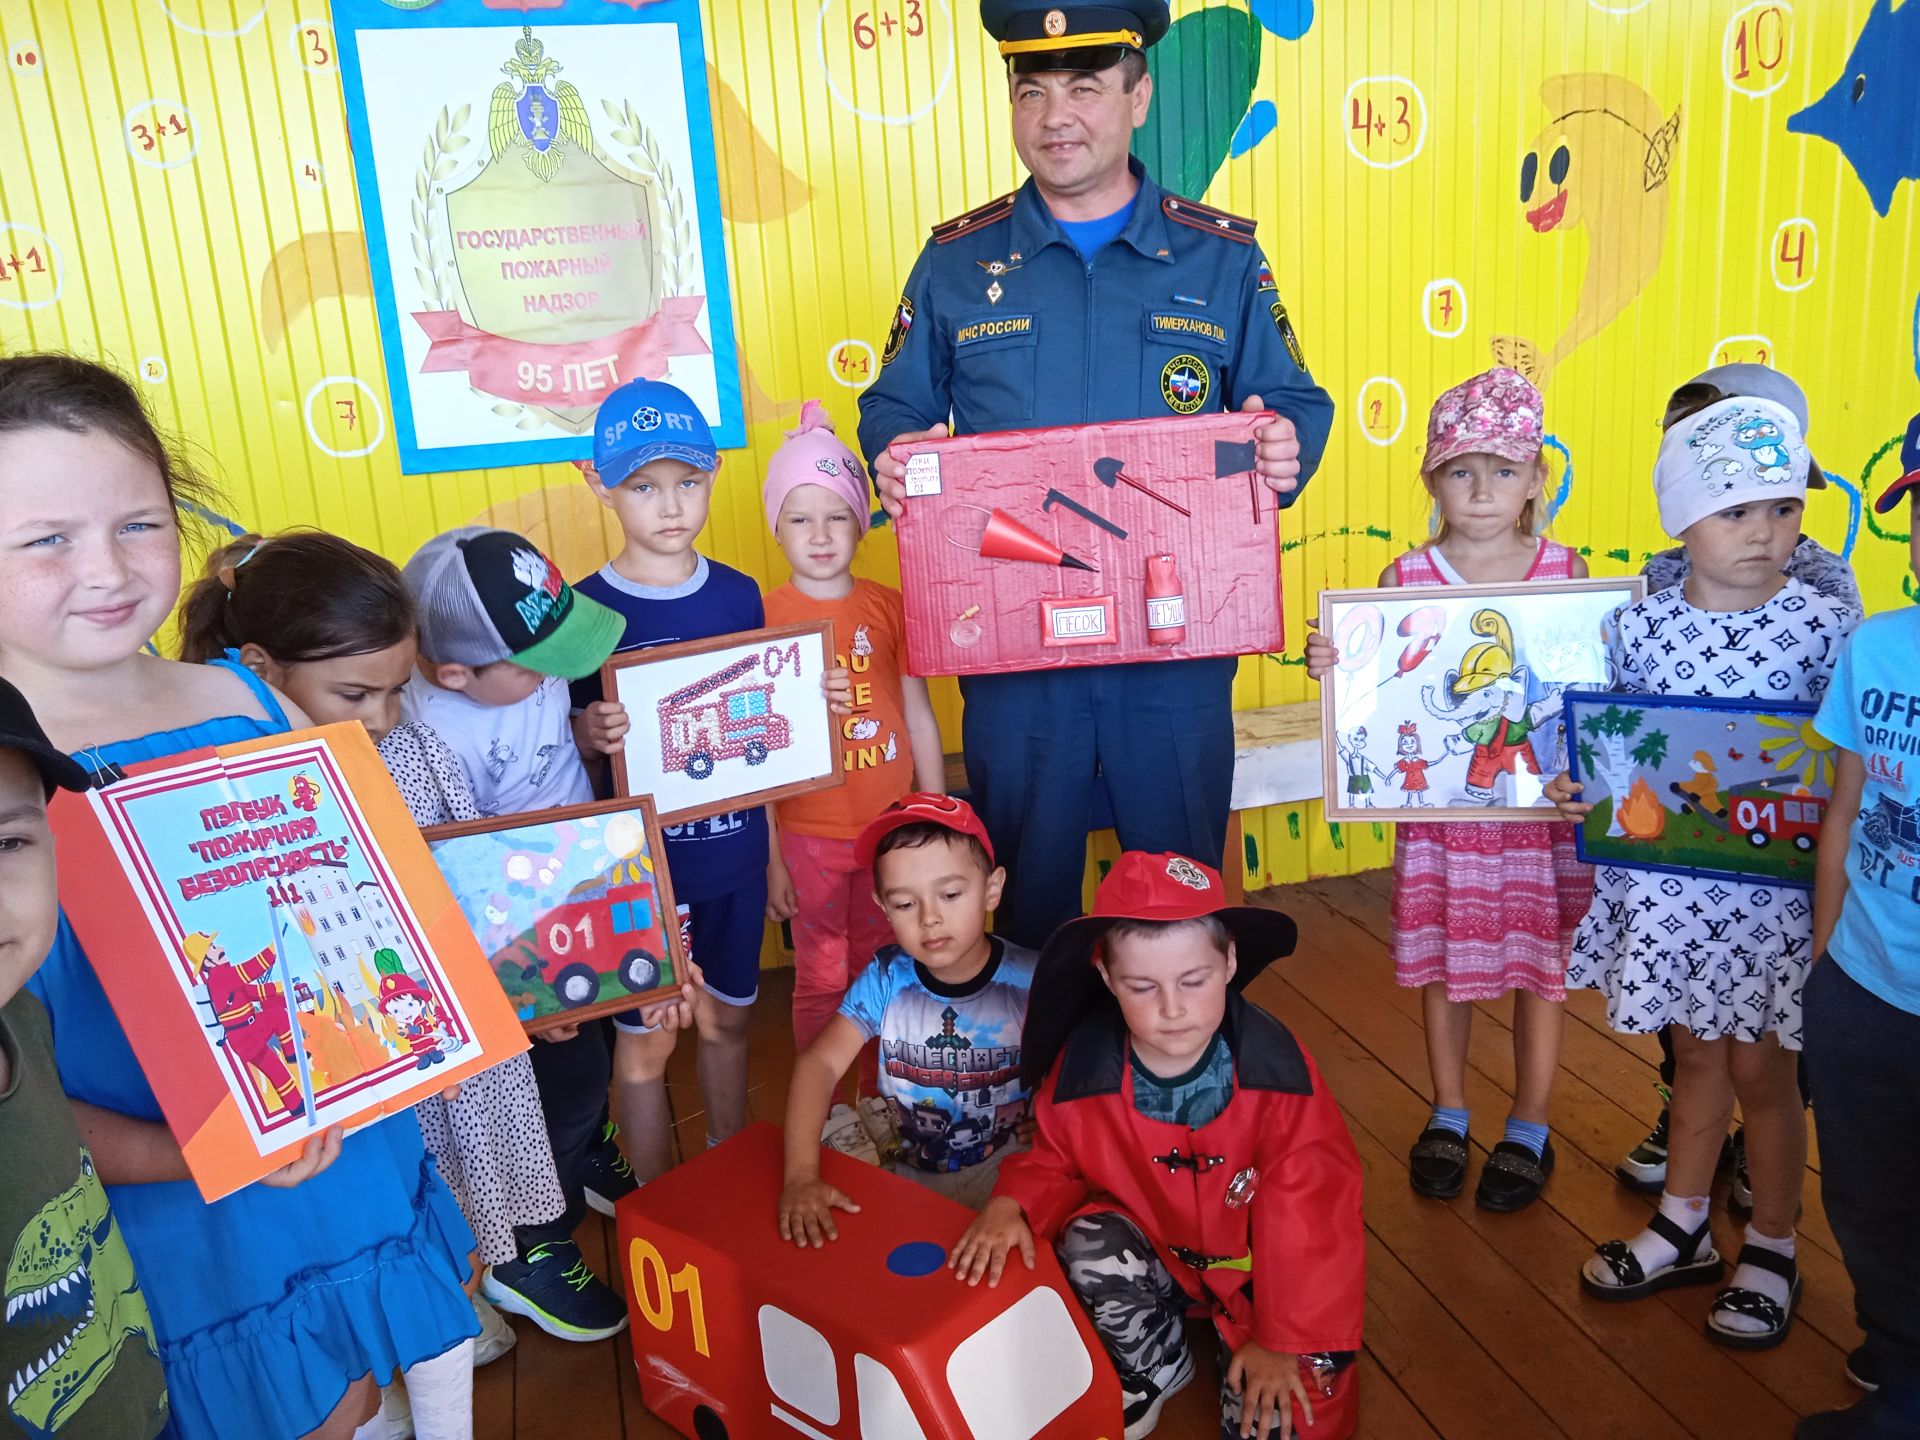 В рамках празднования 95-летия Государственного пожарного надзора сегодня проведен конкурс  детских рисунков и поделок